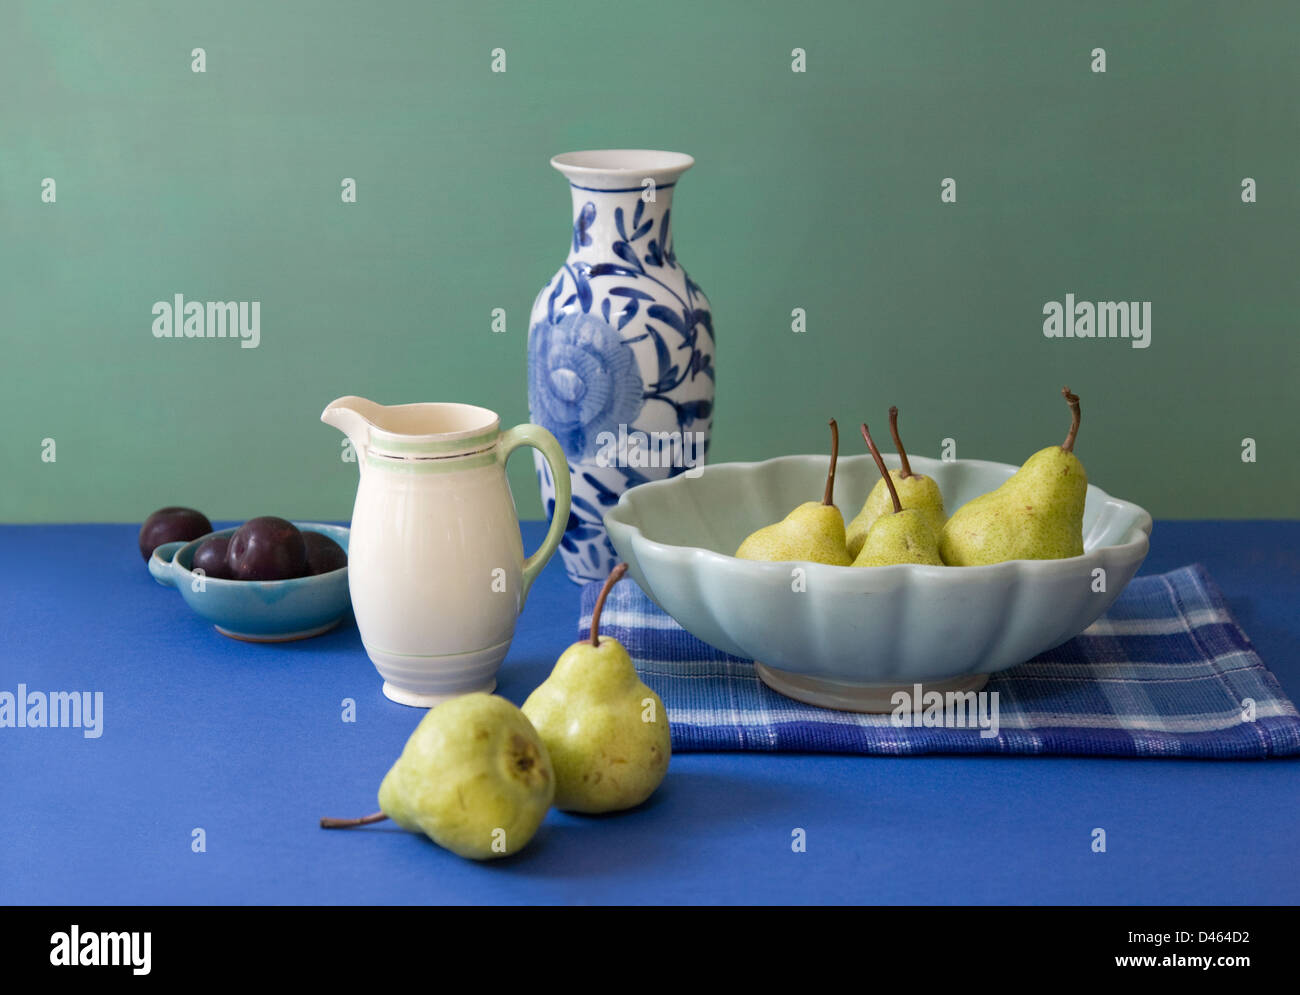 De couleur coordonnée de la vie toujours de la vaisselle, des poires et prunes sur un tableau bleu avec un fond vert Banque D'Images